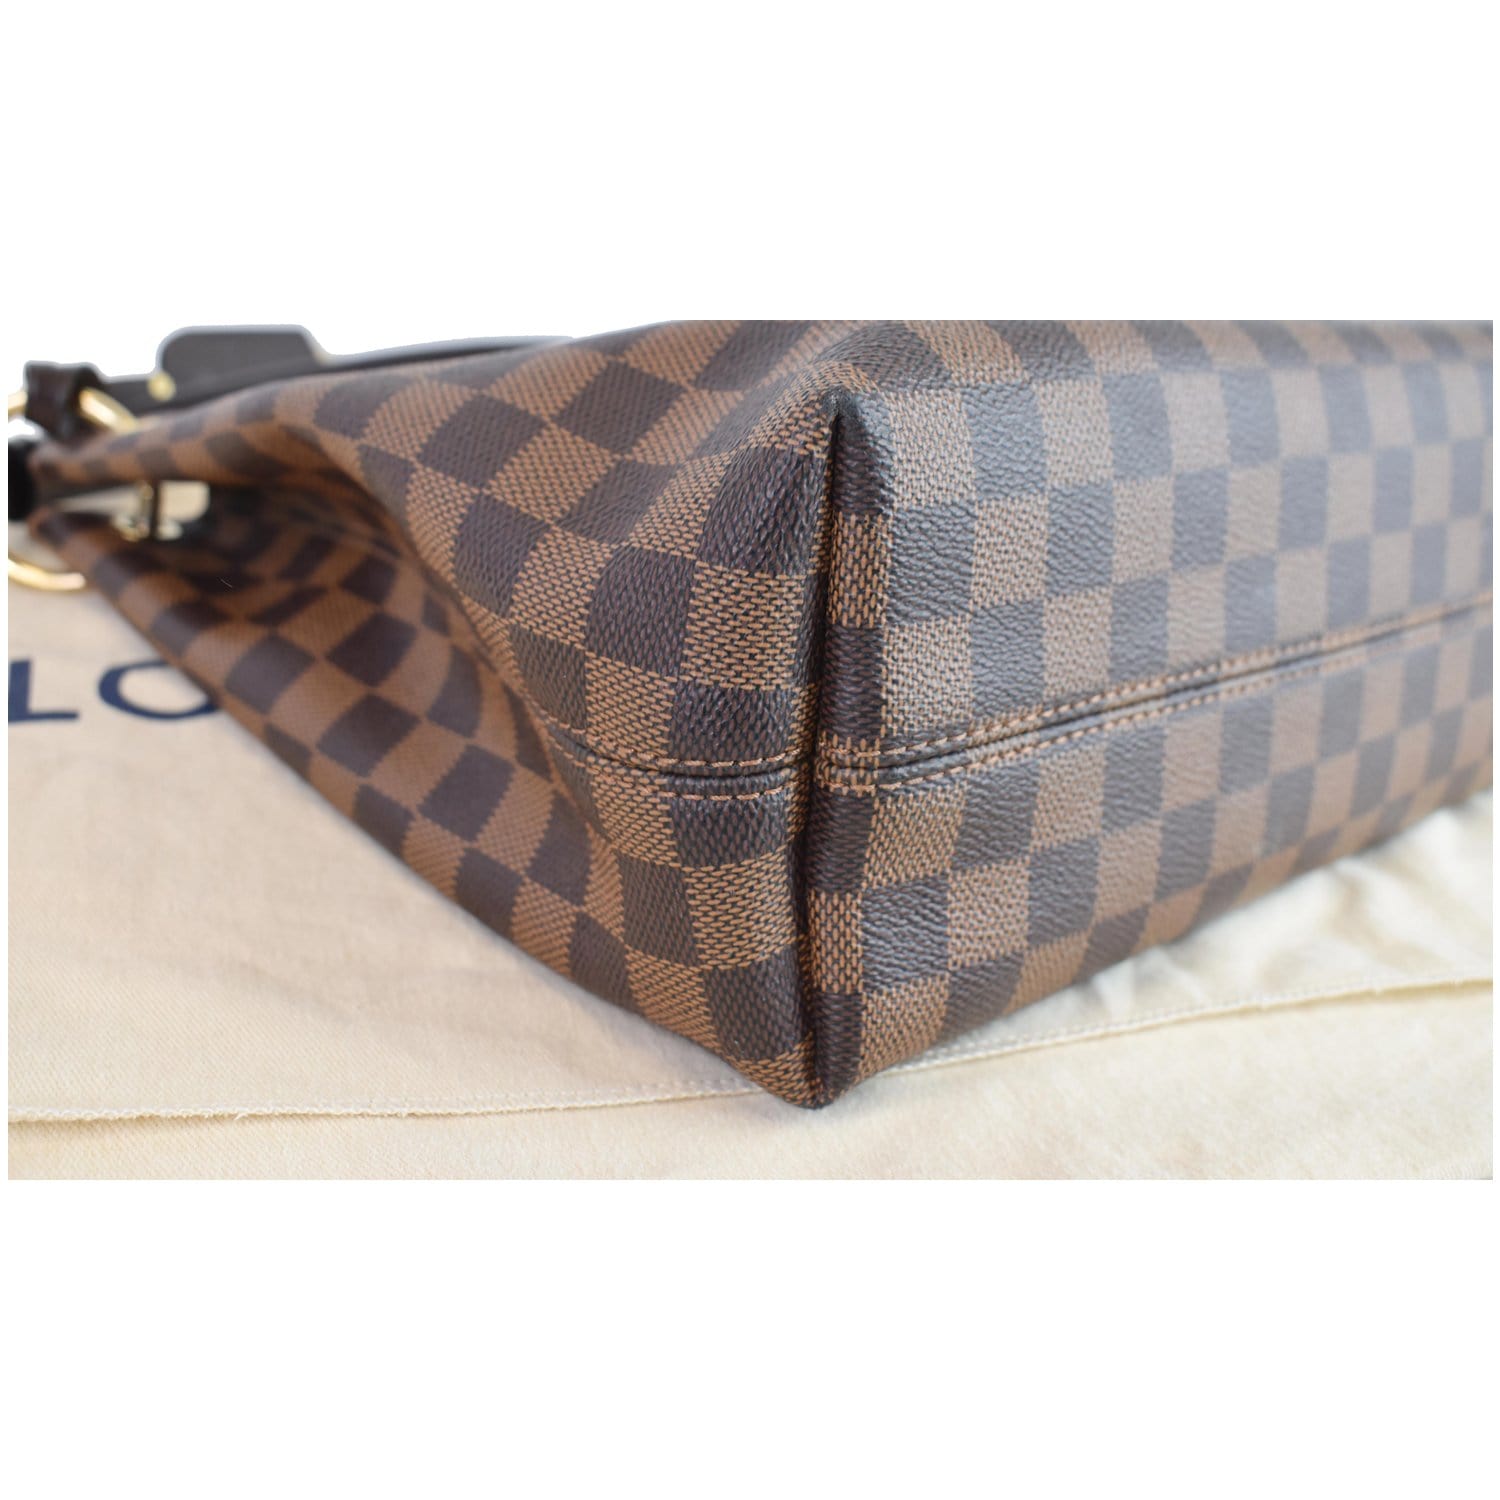 Louis Vuitton Graceful PM Damier Ebene Canvas Shoulder Bag